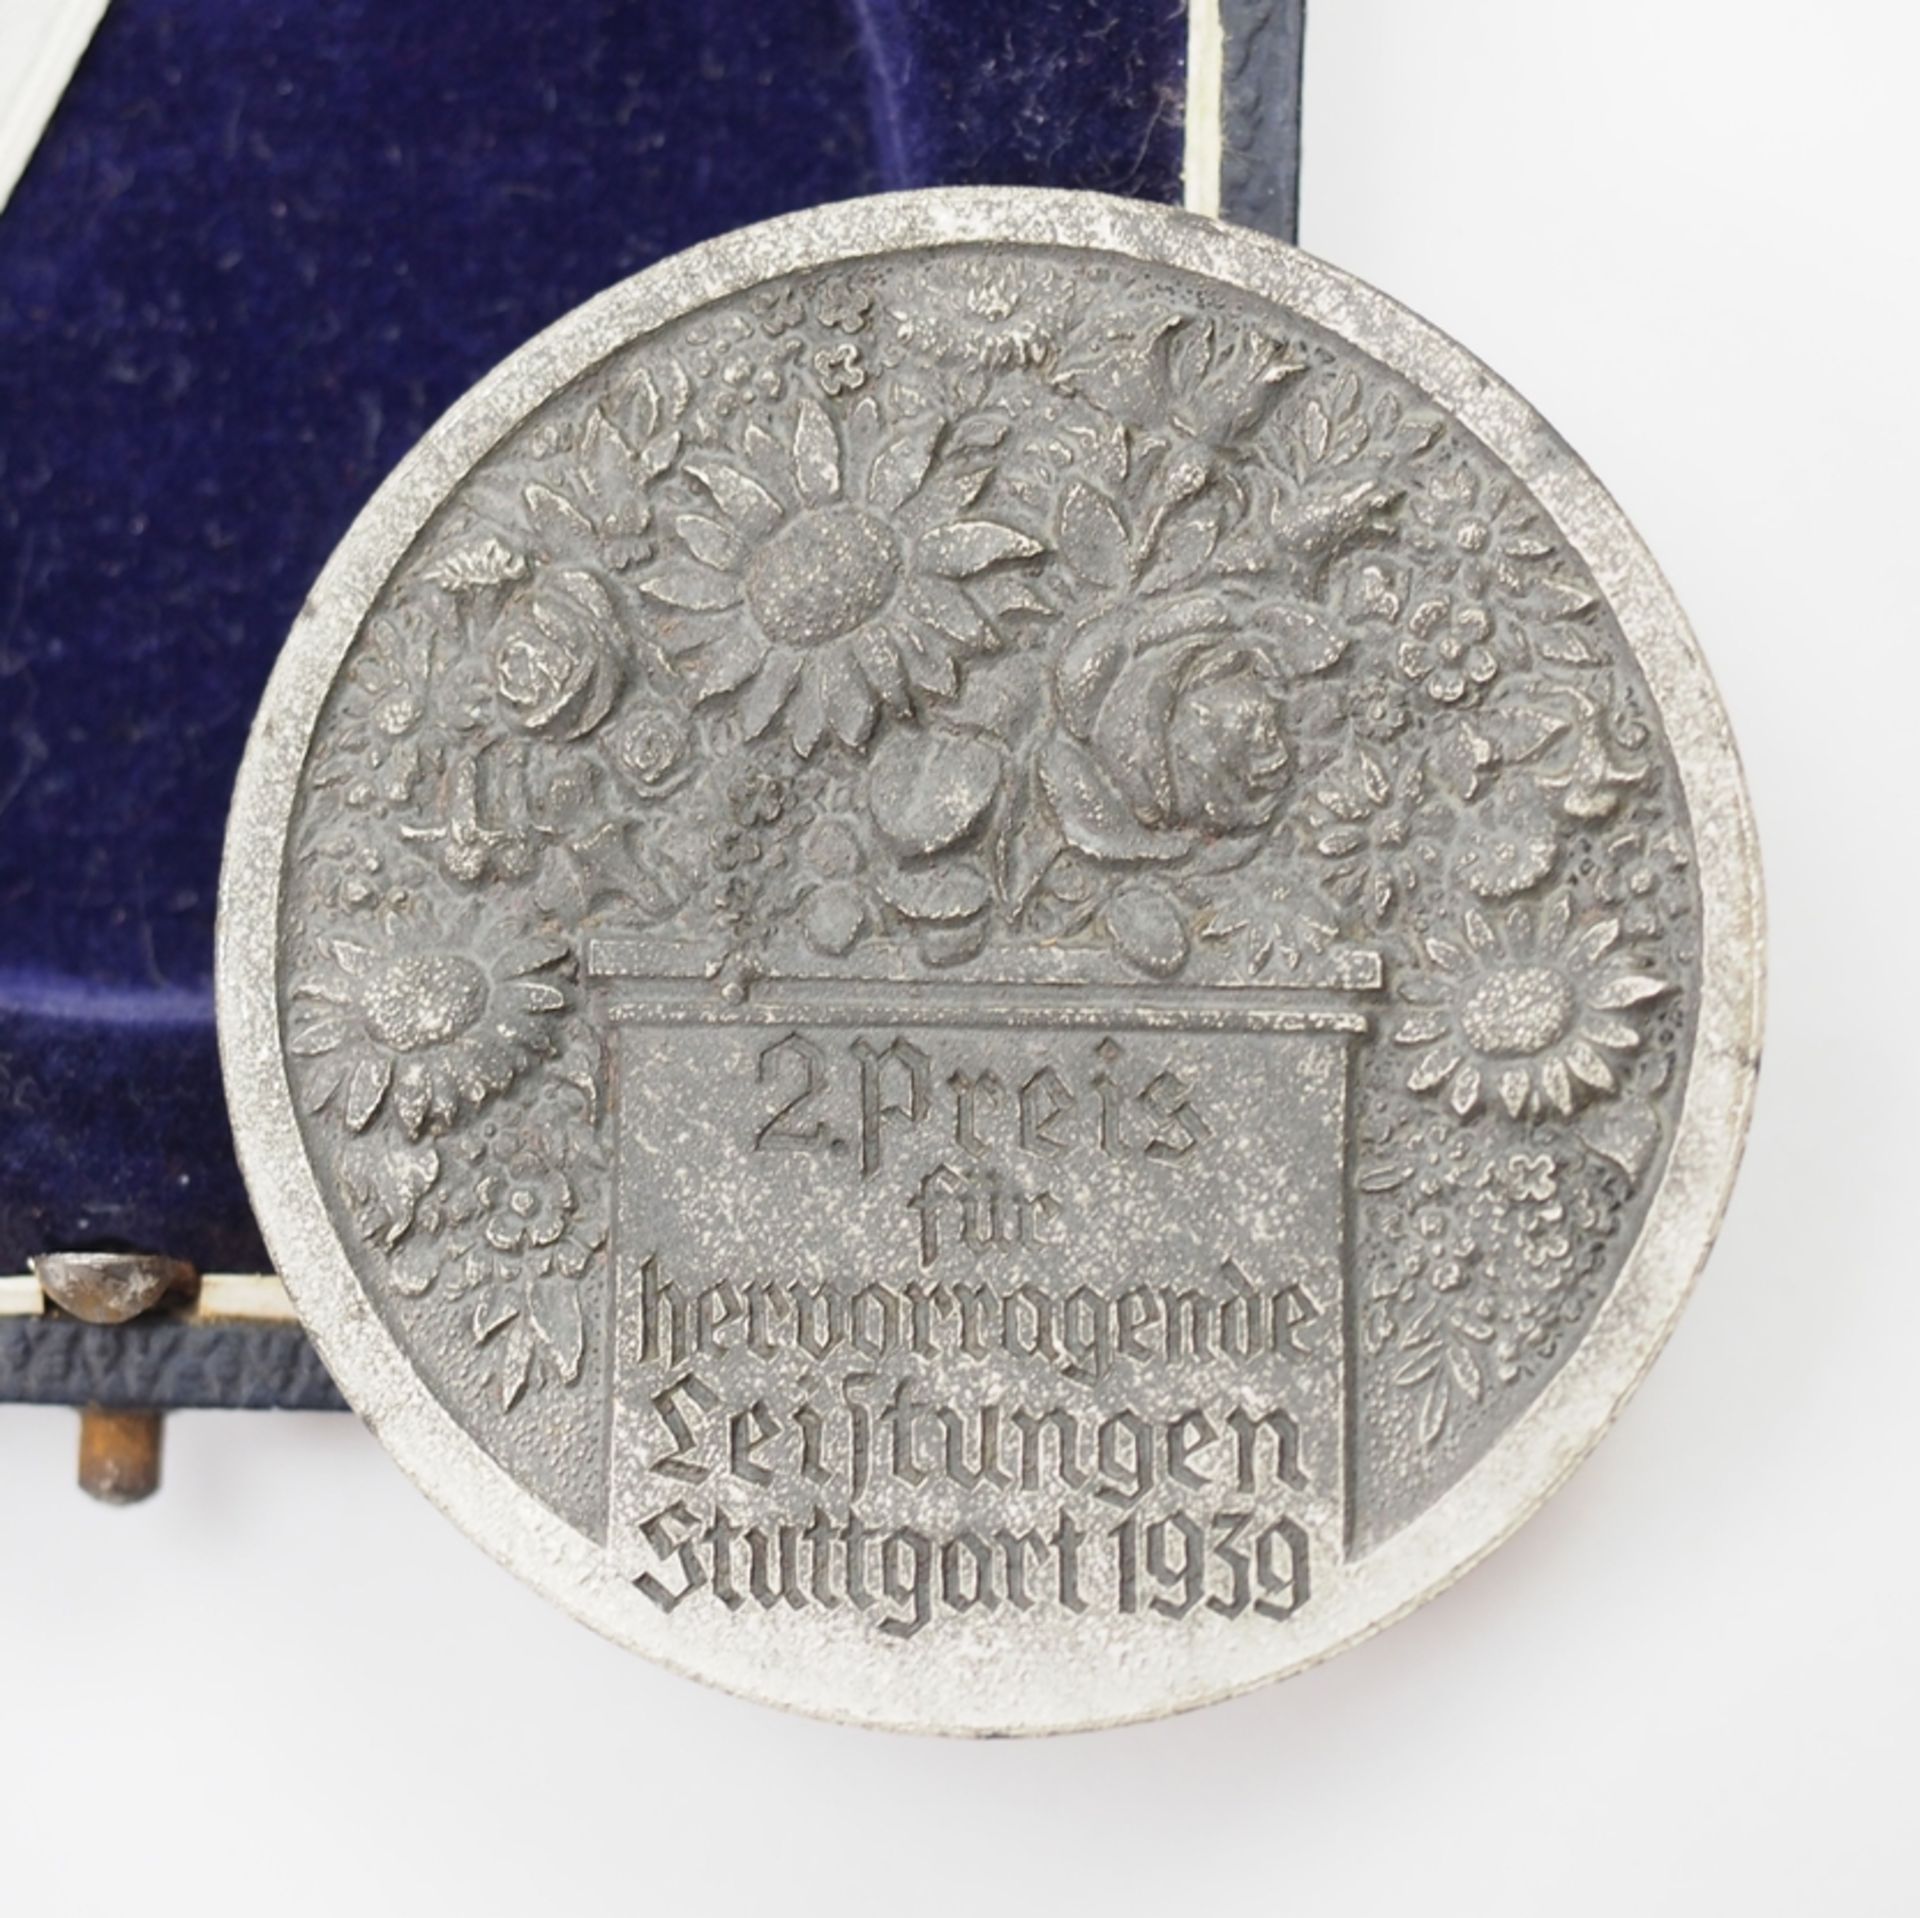 Reichsnährstand: Medaille 2. Preis für hervorragende Leistungen, Stuttgart 1939, auf der Reichsauss - Bild 2 aus 3